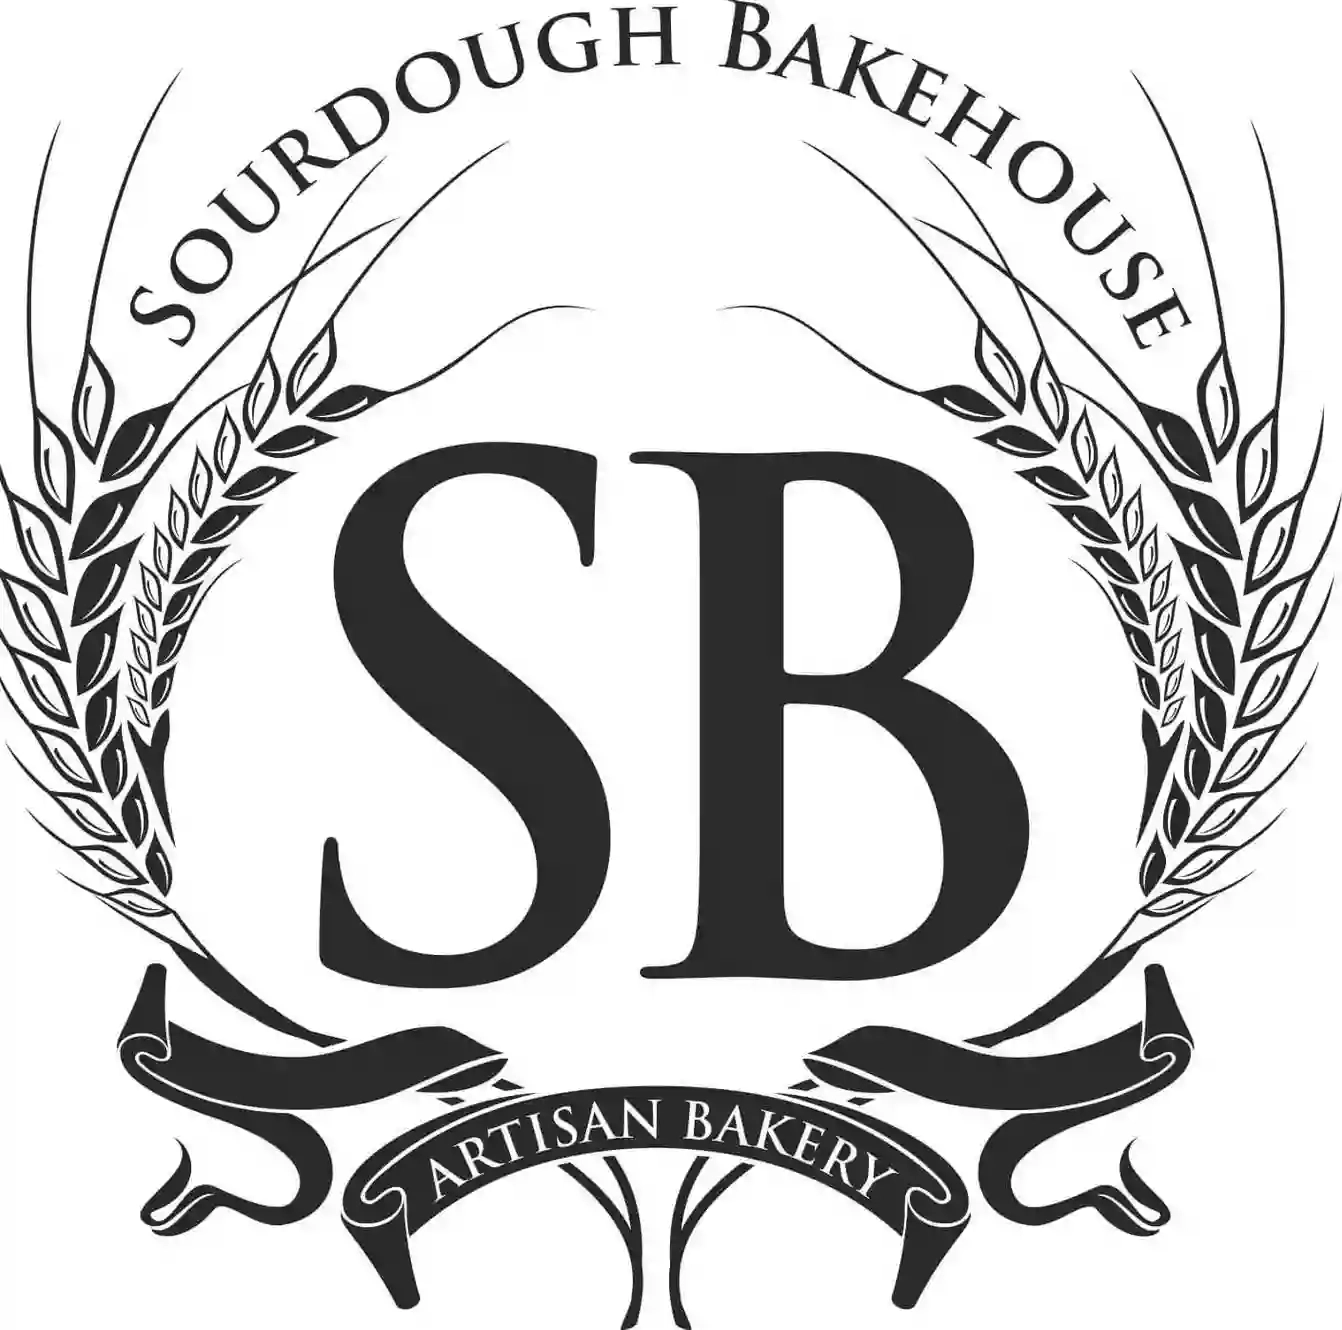 The Sourdough Bakehouse Ltd